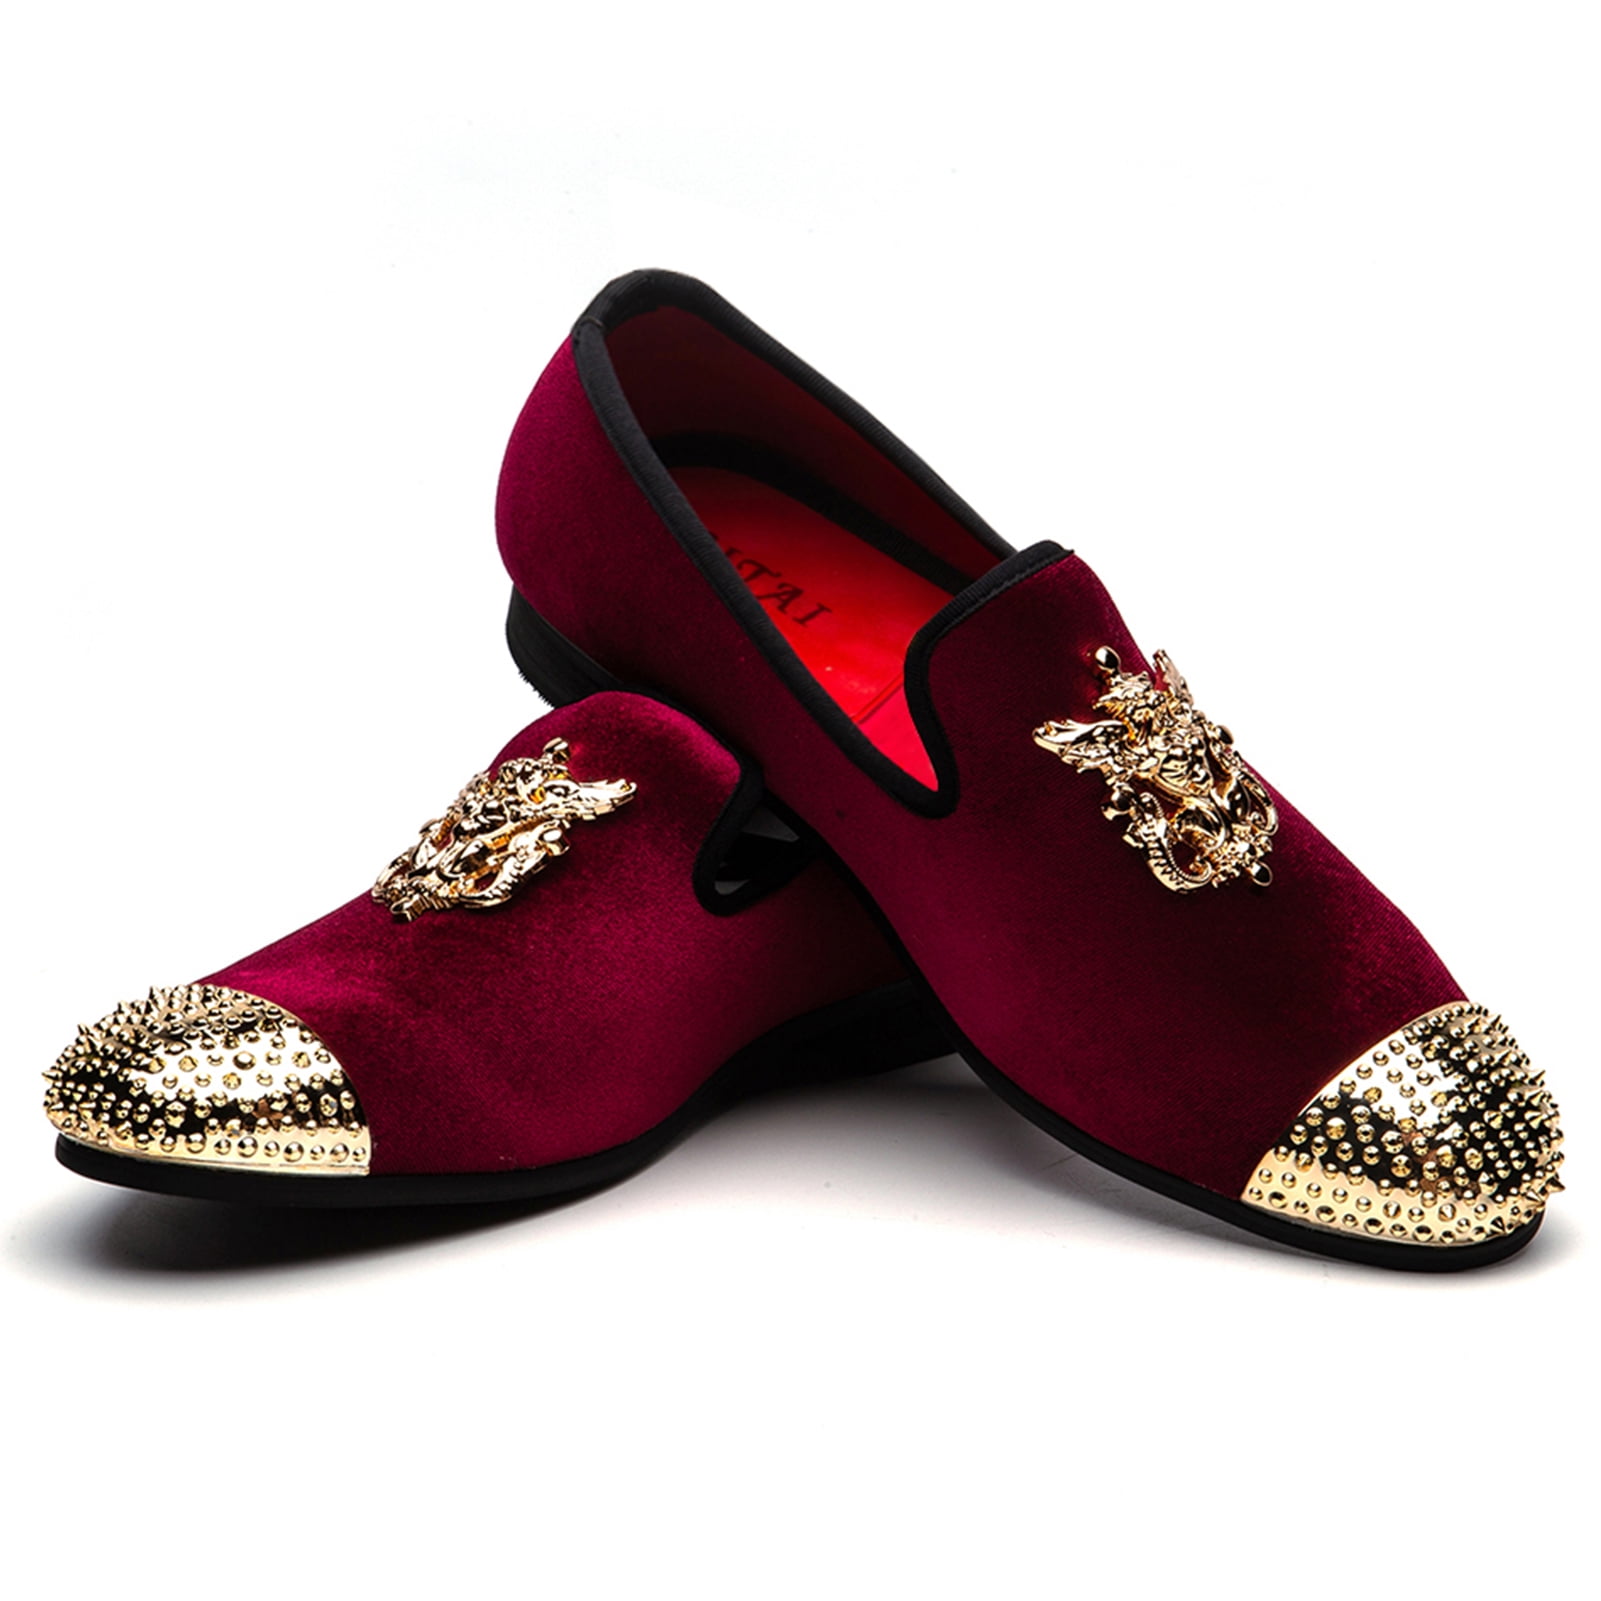 ASOS Mens Burgundy Red Velvet Sneakers Size 10 UK / 10.5 US 12 US Women's |  eBay